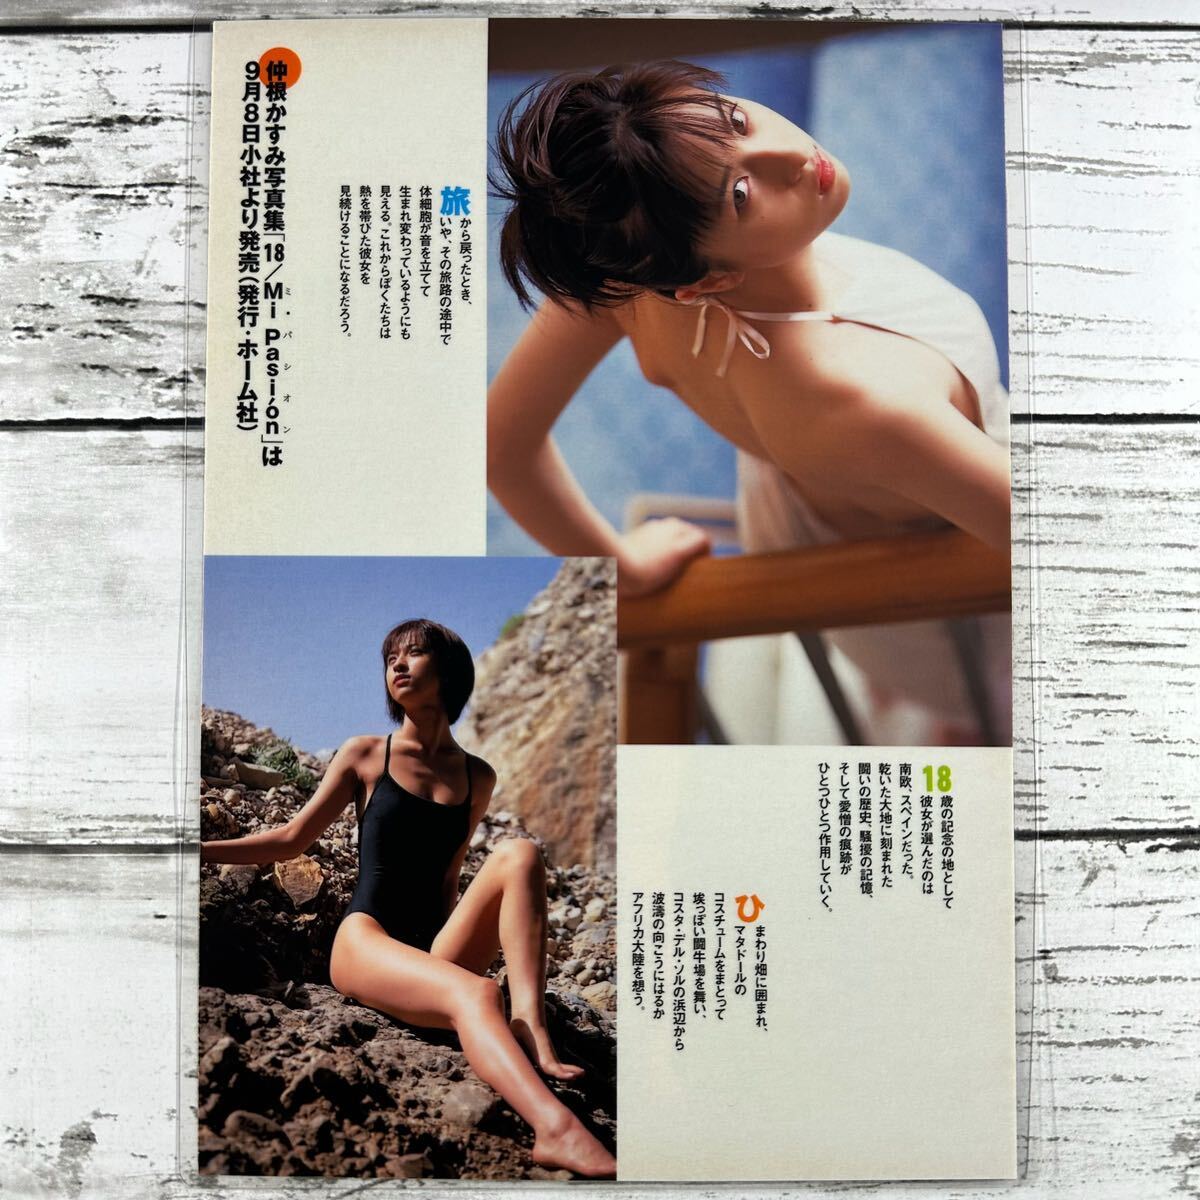 [ высокое качество ламинирование отделка ][ Nakane Kasumi ] Play Boy 2000 год 38 номер журнал вырезки 5P B5 плёнка купальный костюм bikini model актер женщина super 